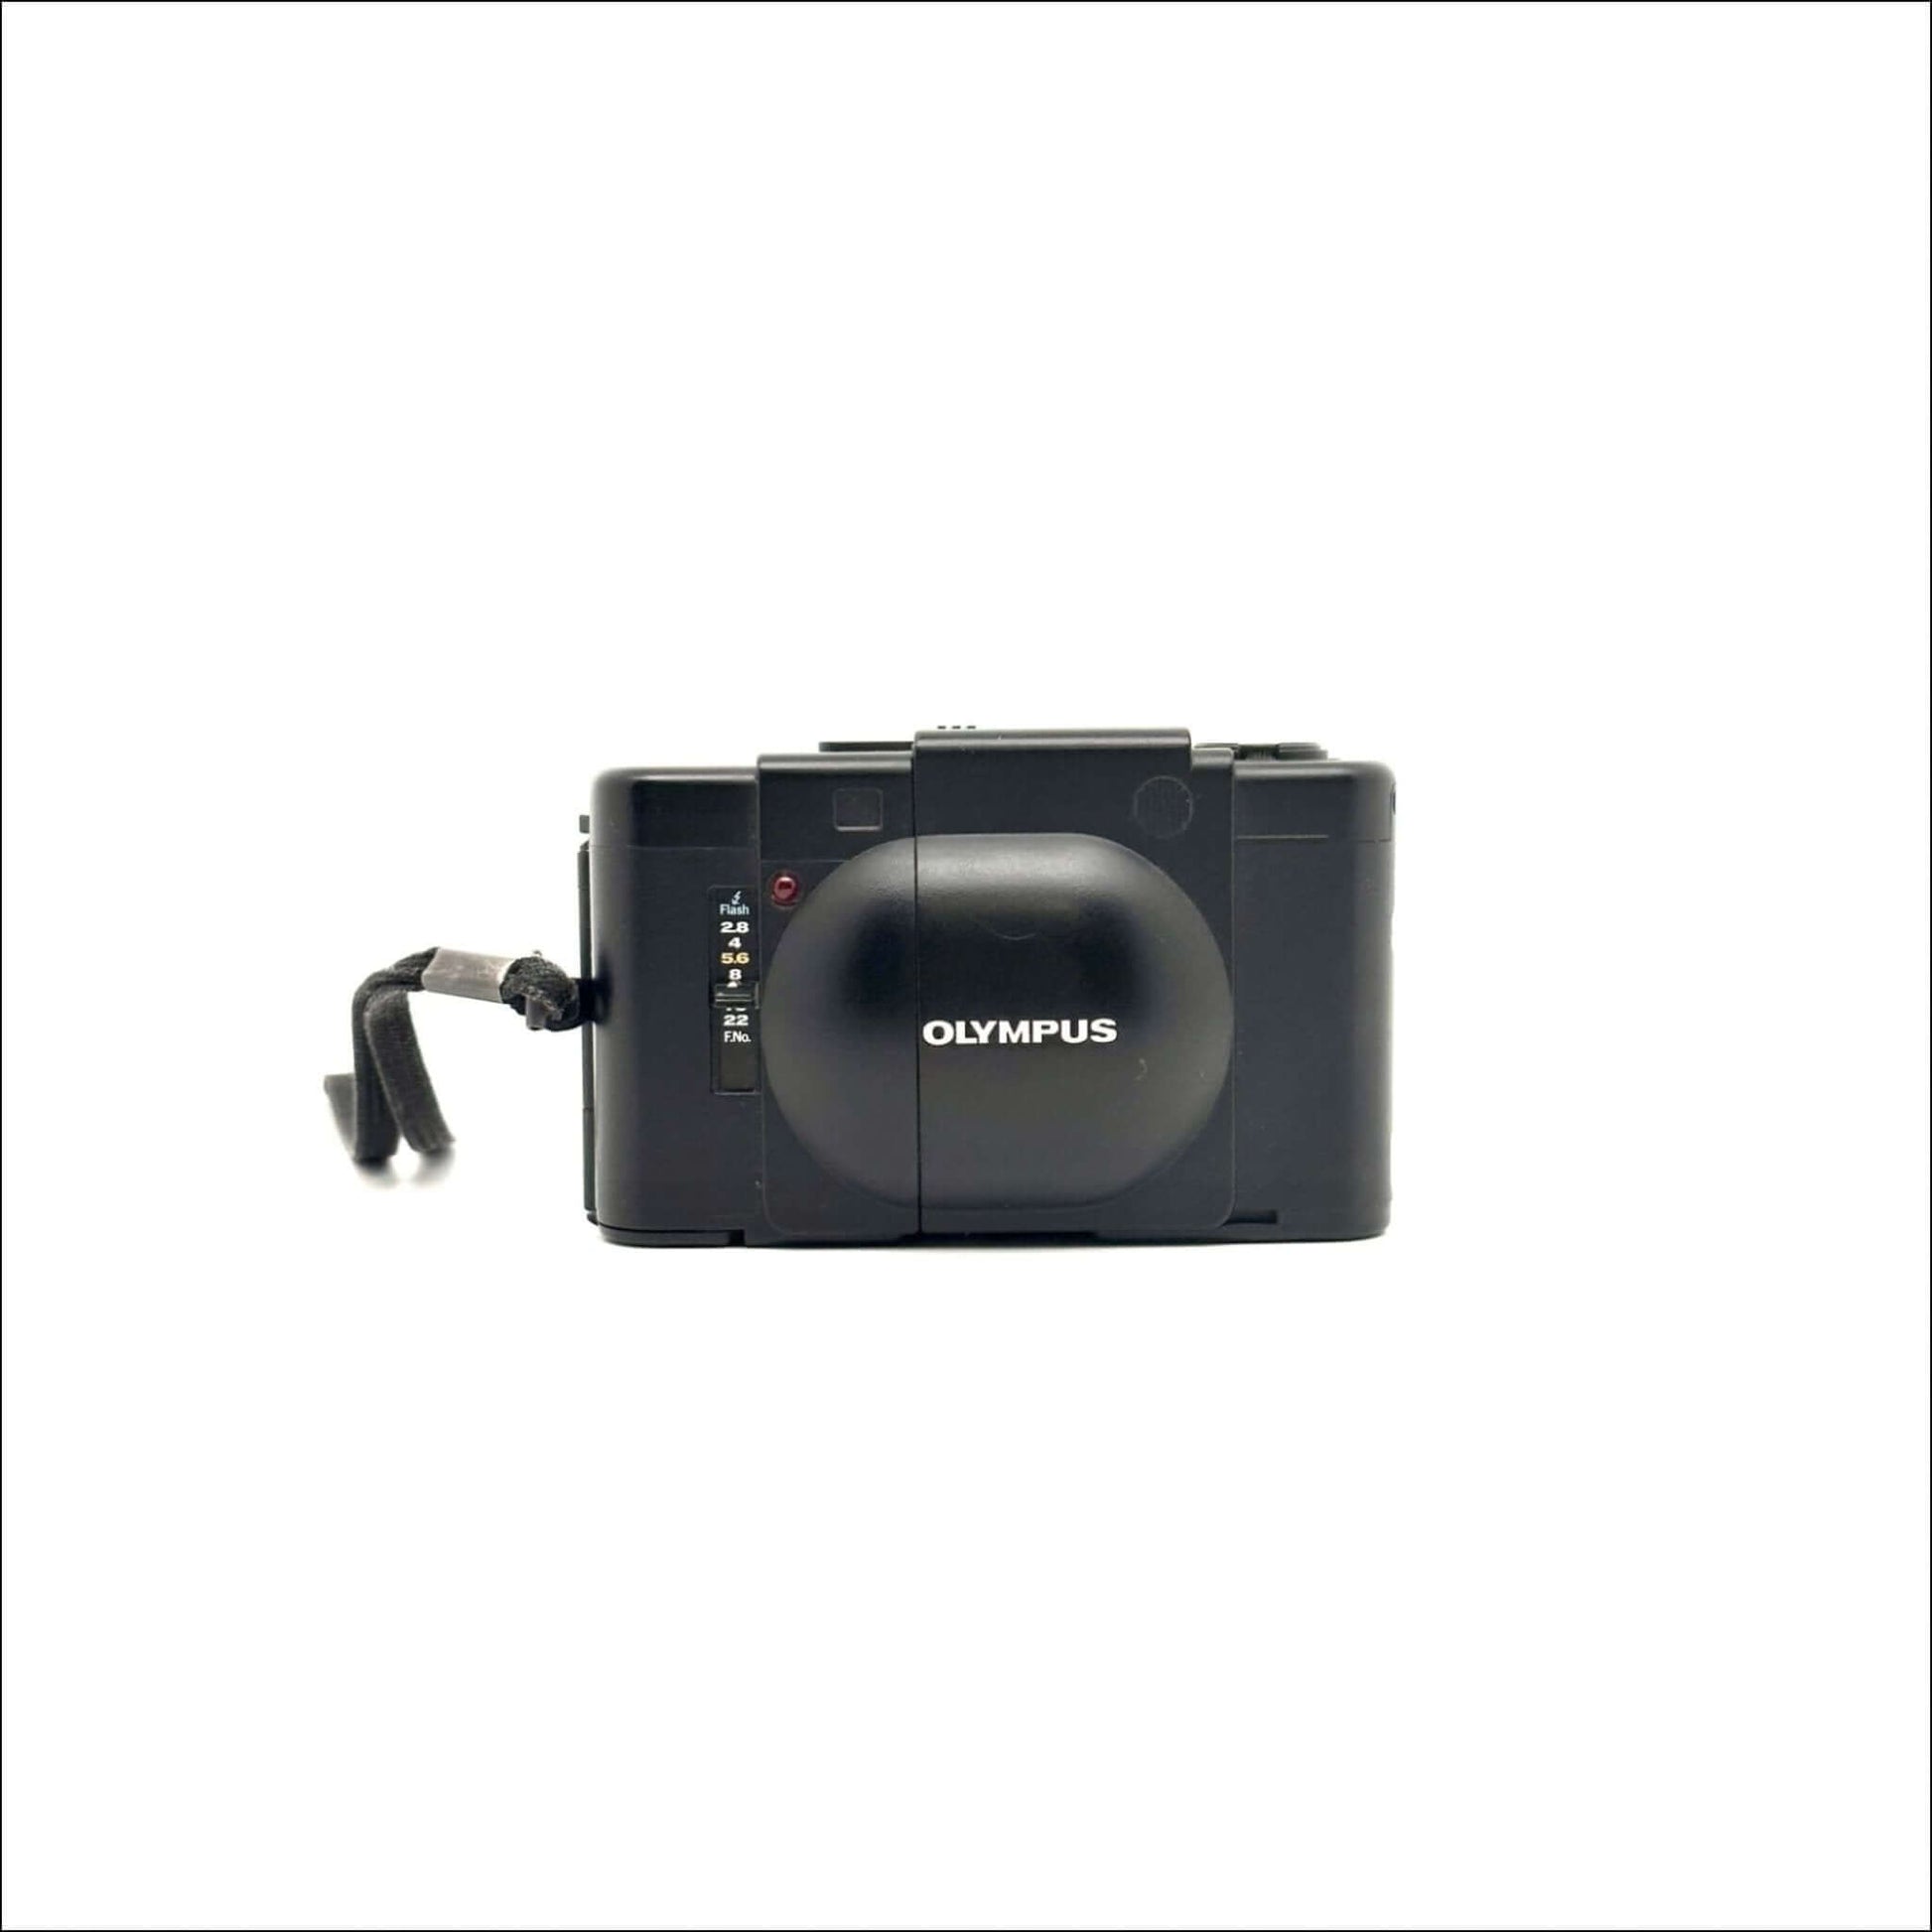 Olympus Xa Used 35mm Used Film Camera #2942818